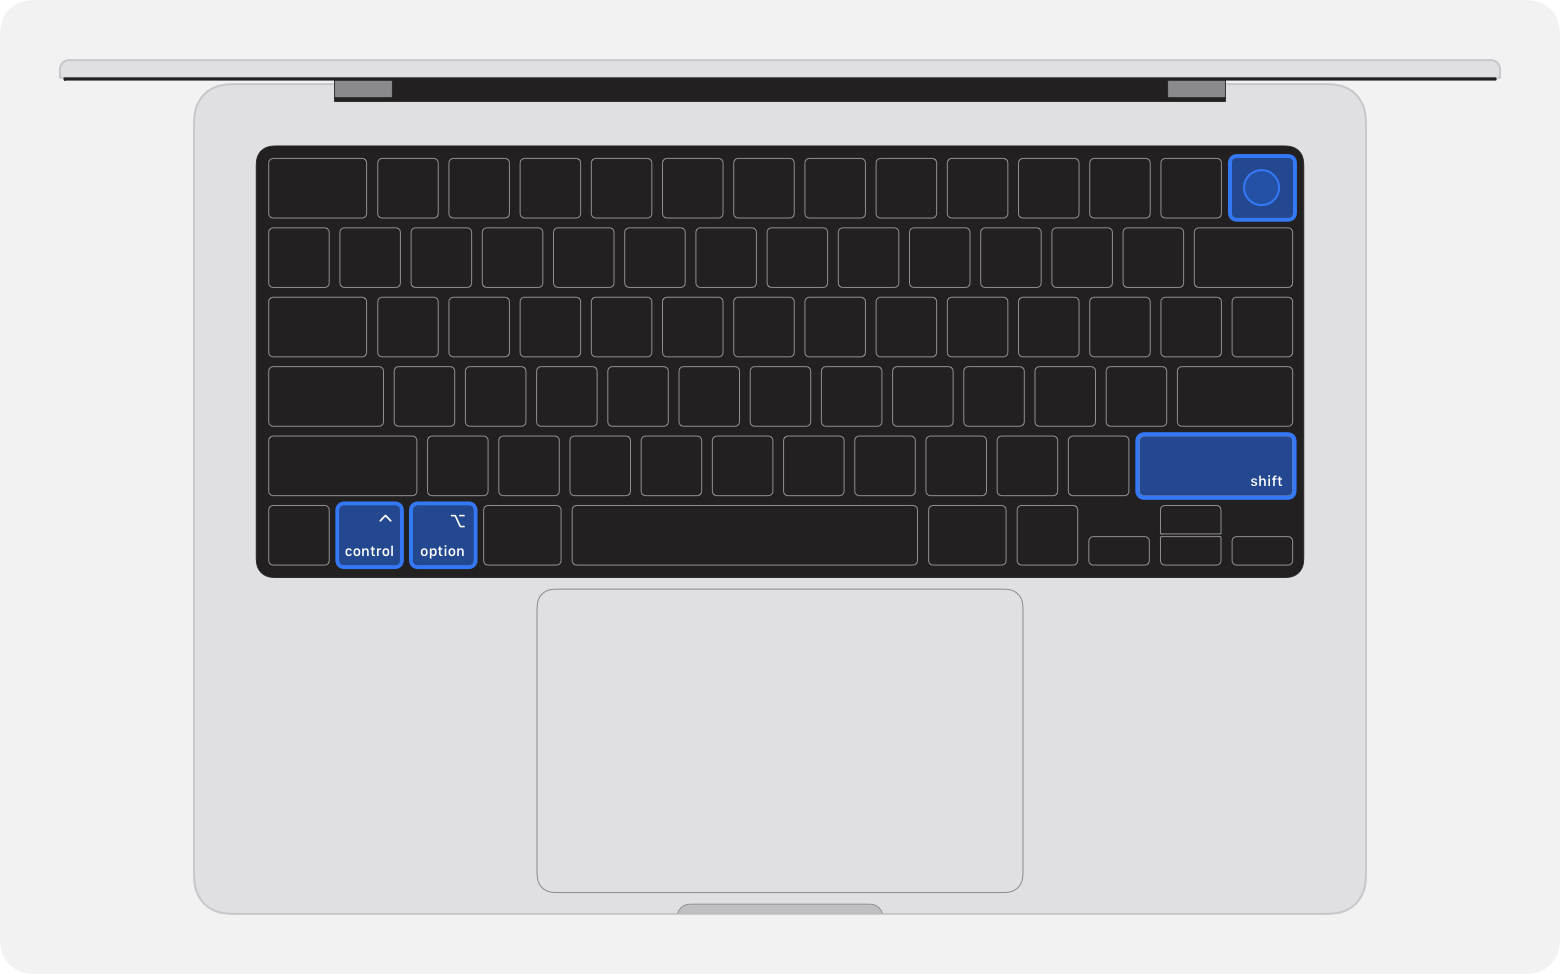 Image de la partie supérieure de l’ordinateur portable avec les quatre touches en surbrillance